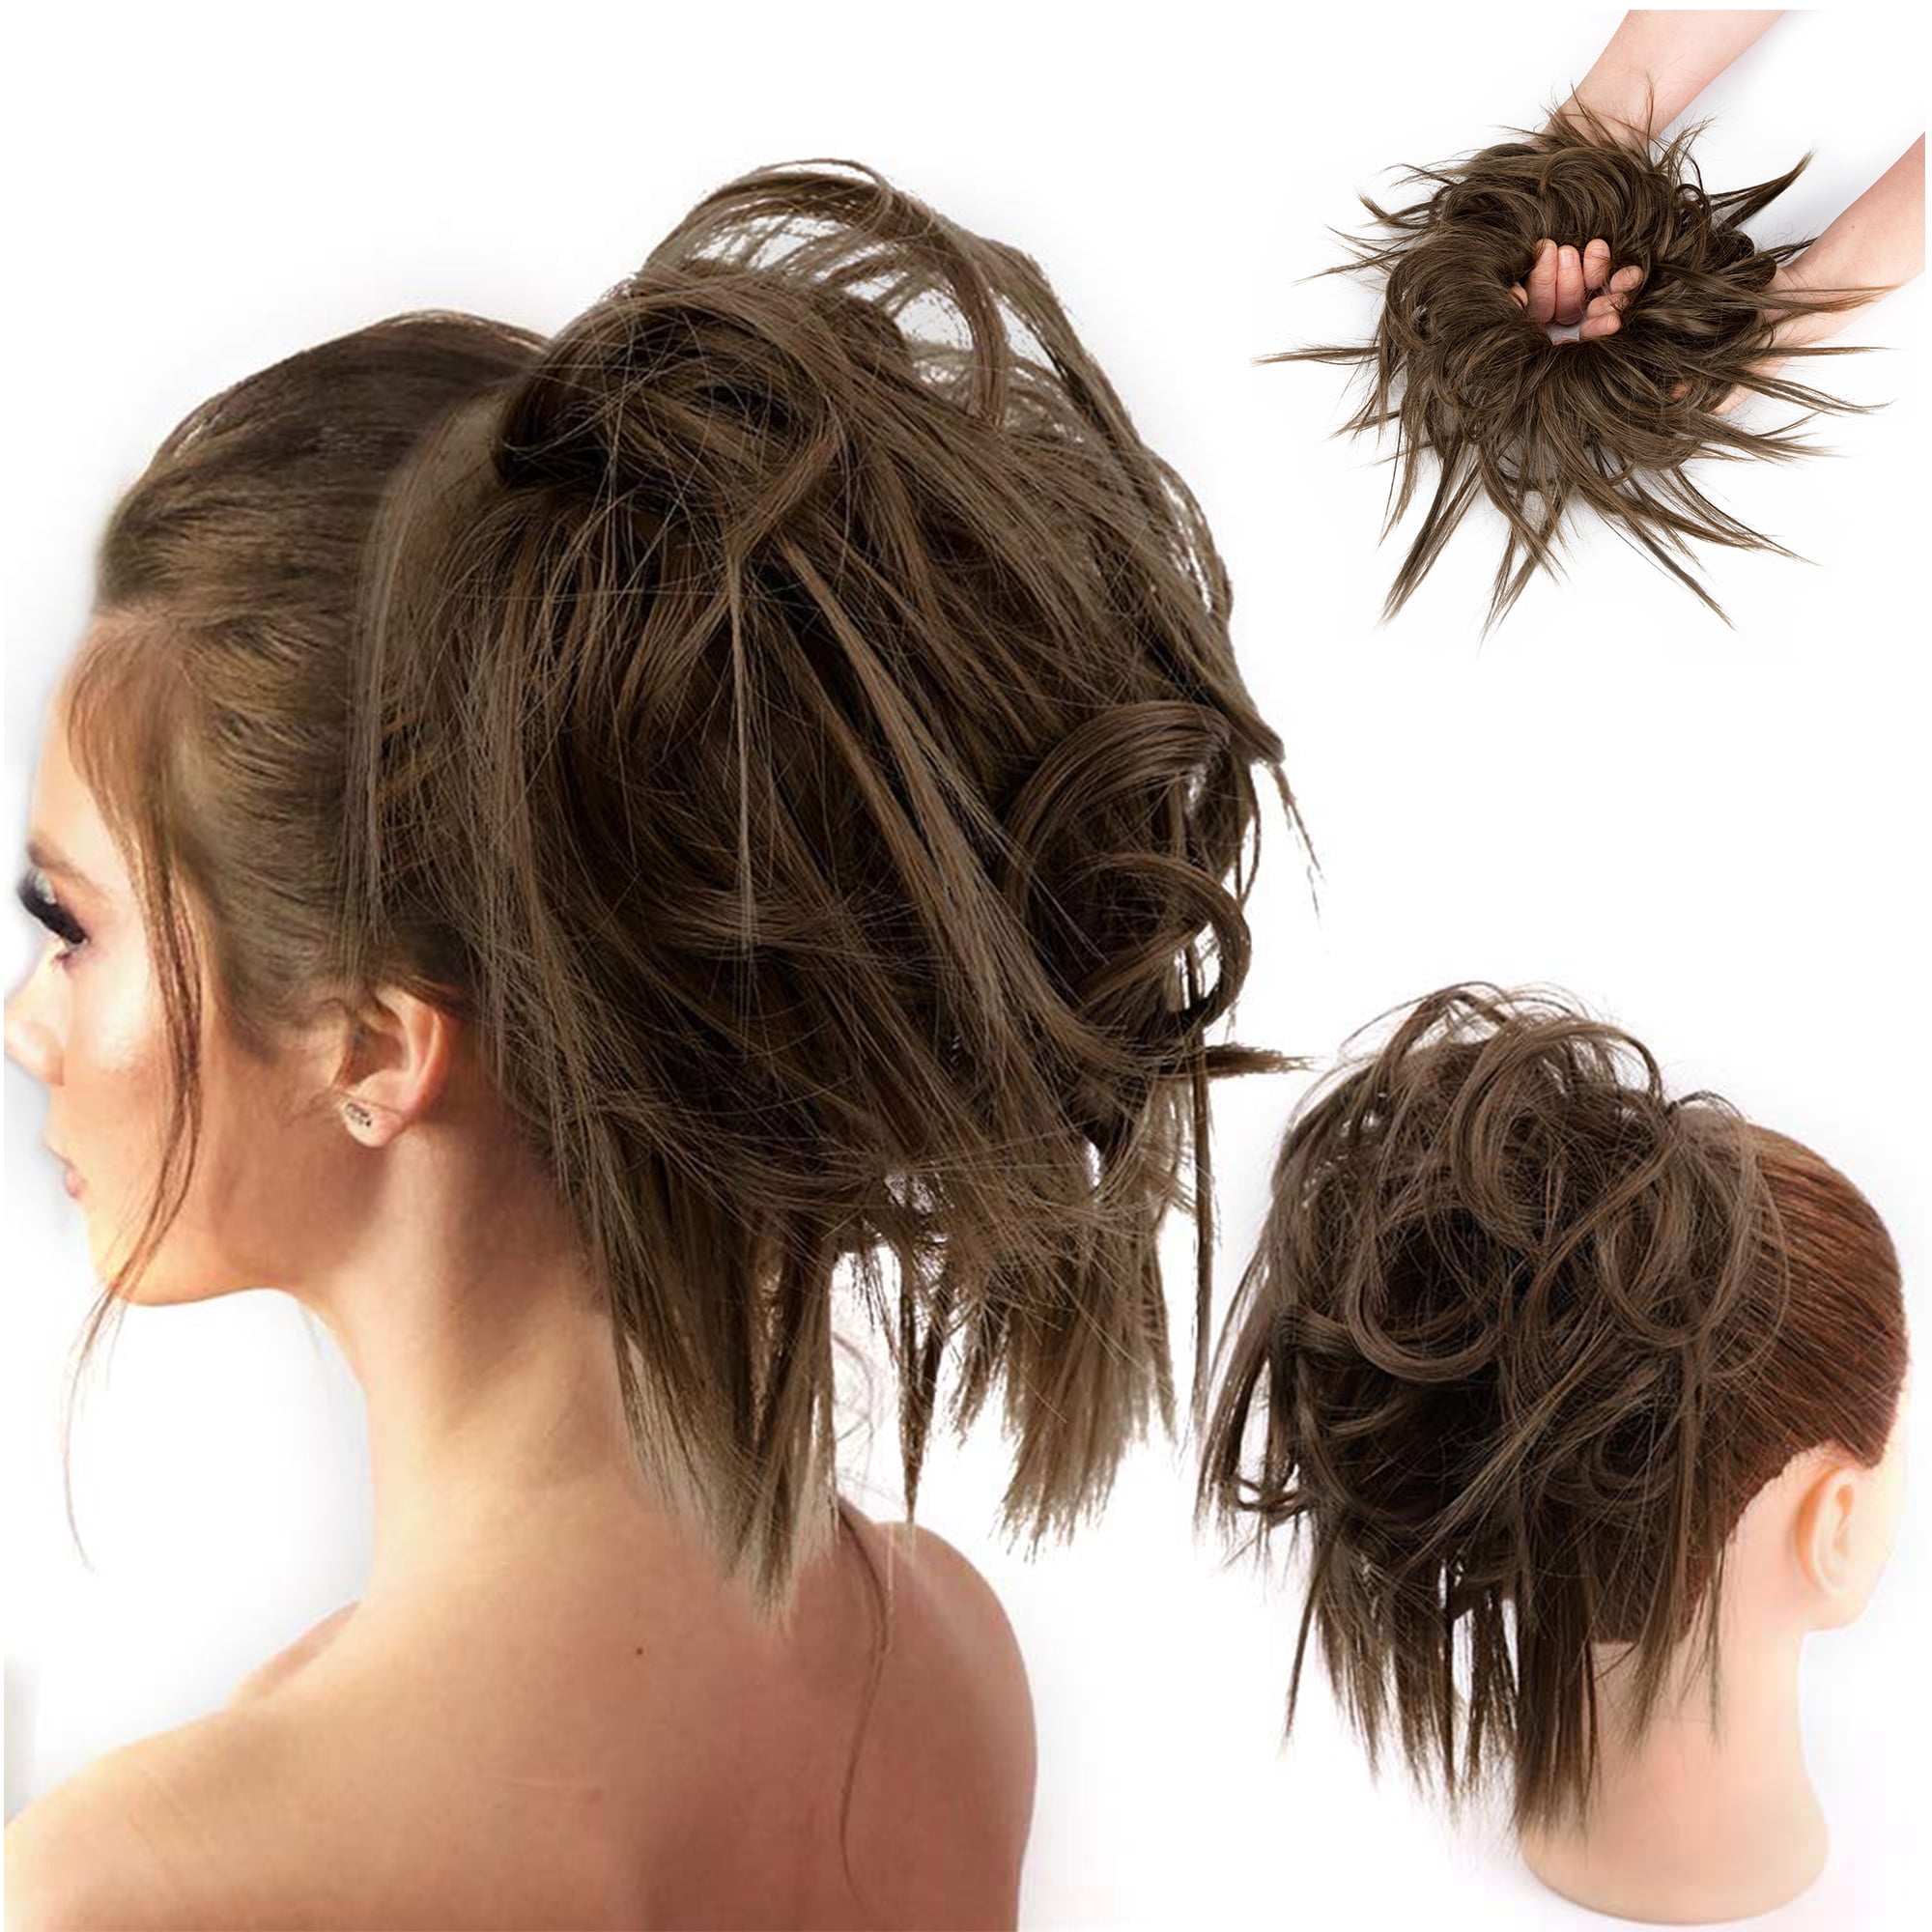 Artificial Jasmine Plastic Flower Gajra Bun For Women Hair Set of 2, White  Color | eBay